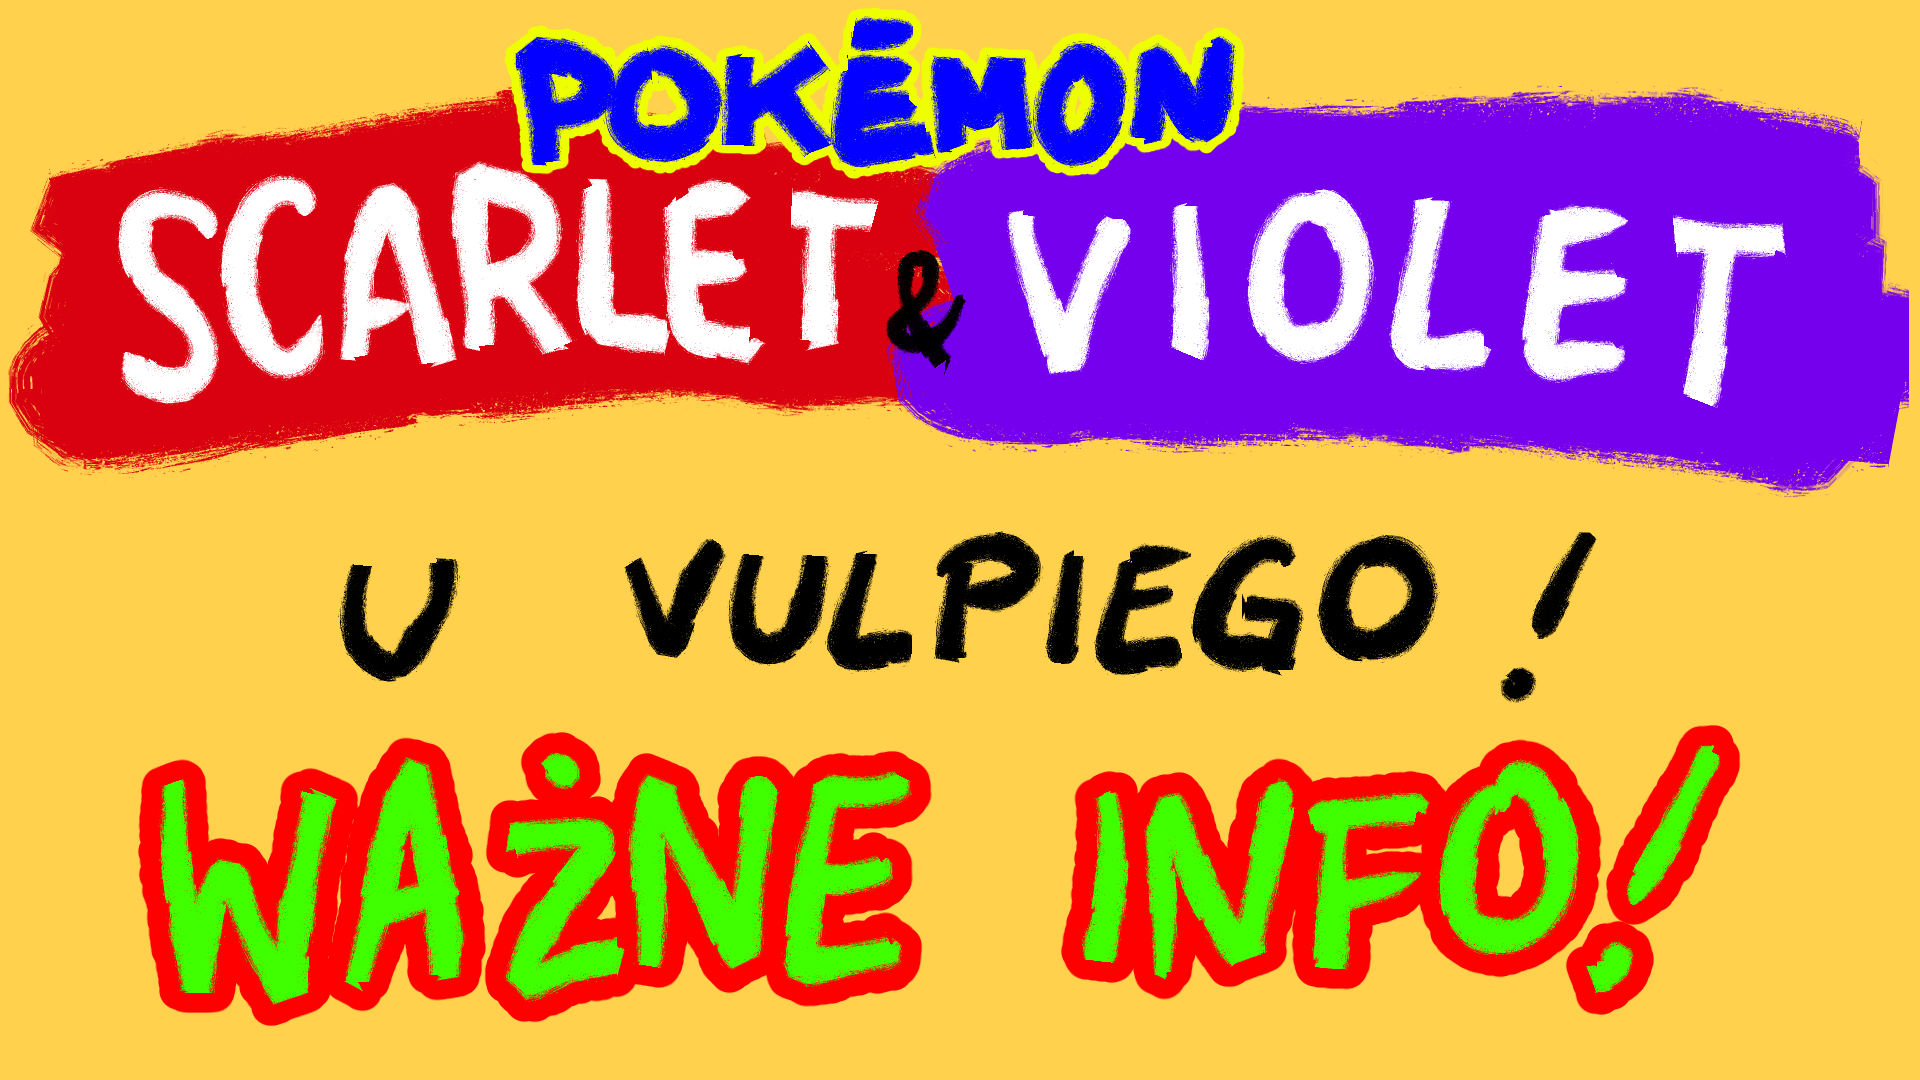 Pokemon Scarlet i Violet u vulpiego!